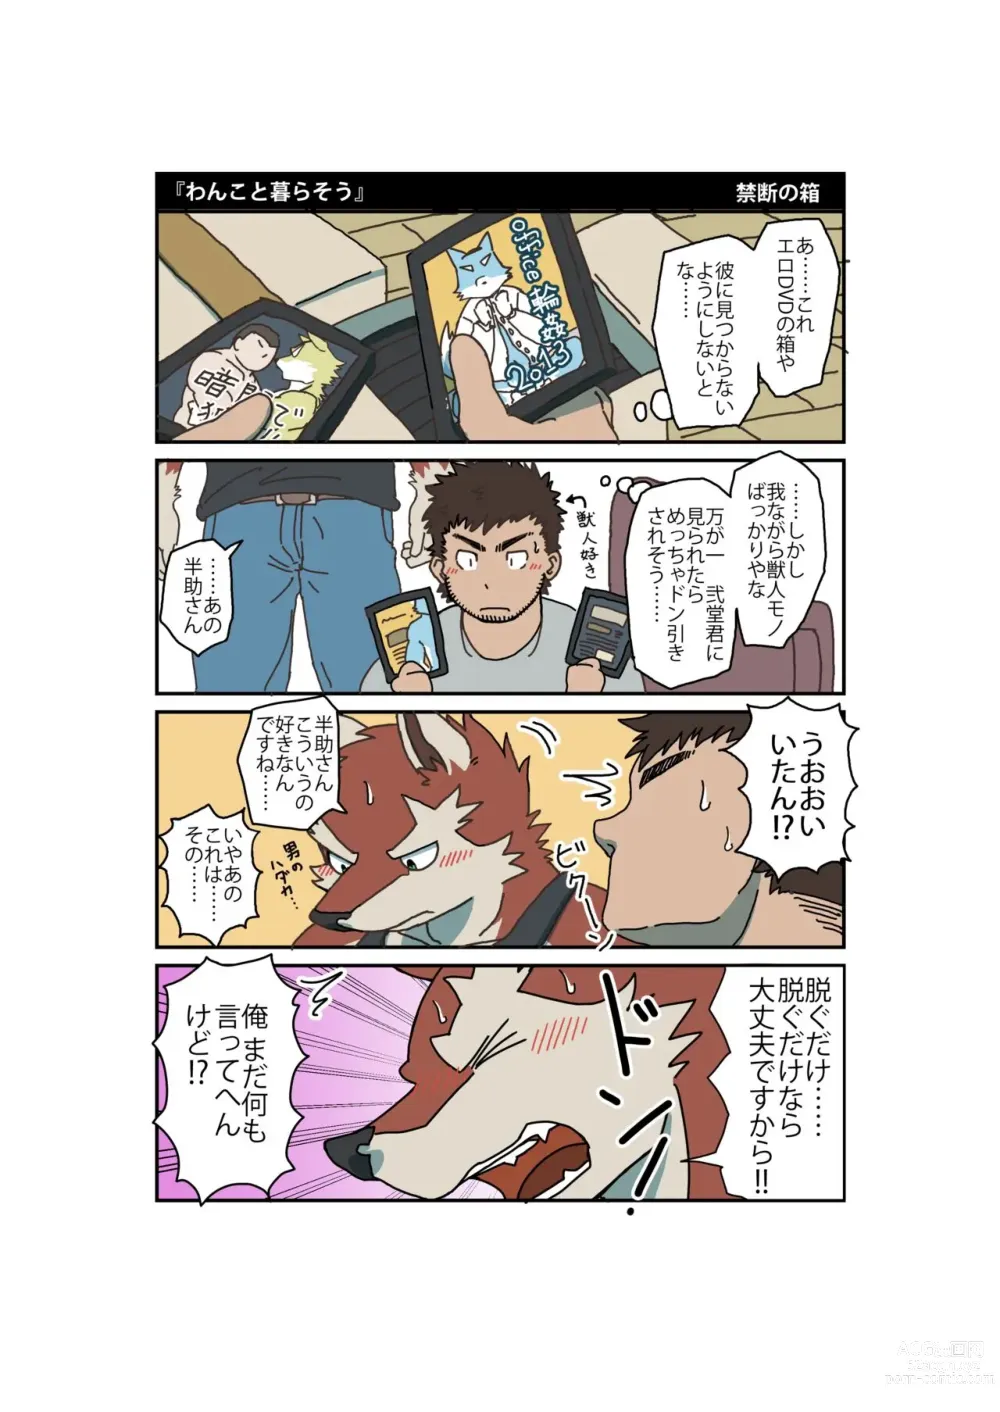 Page 6 of doujinshi Ossu Room Share Monogatari